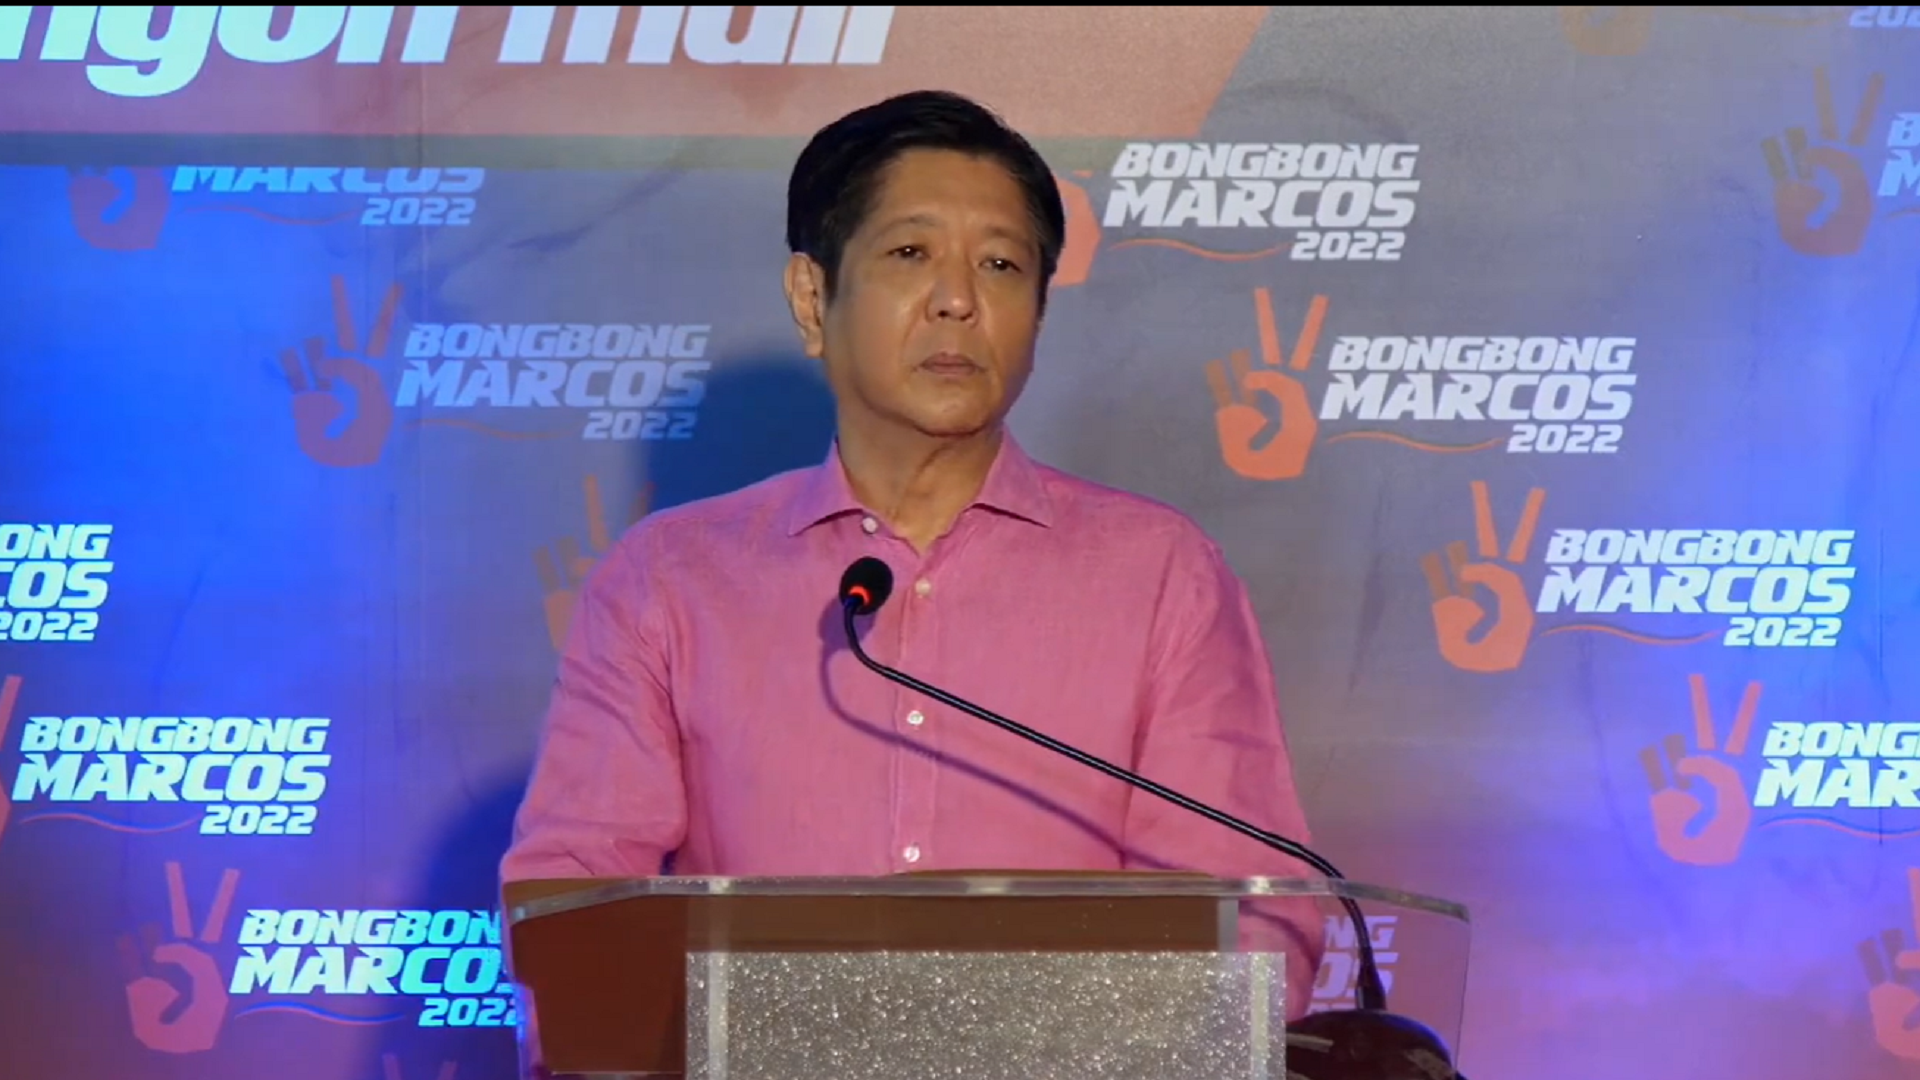 Dating Senador Bongbong Marcos pormal nang inanunsyo ang pagtakbo bilang pangulo ng bansa